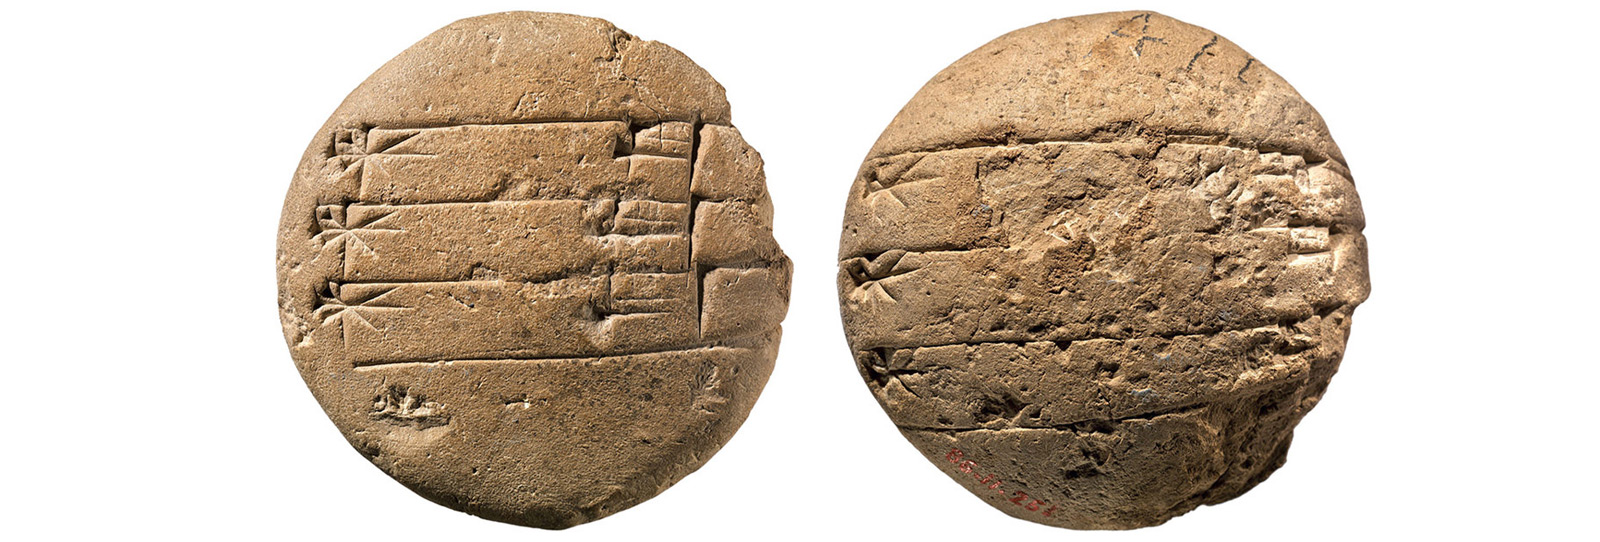 Texting Cuneiform